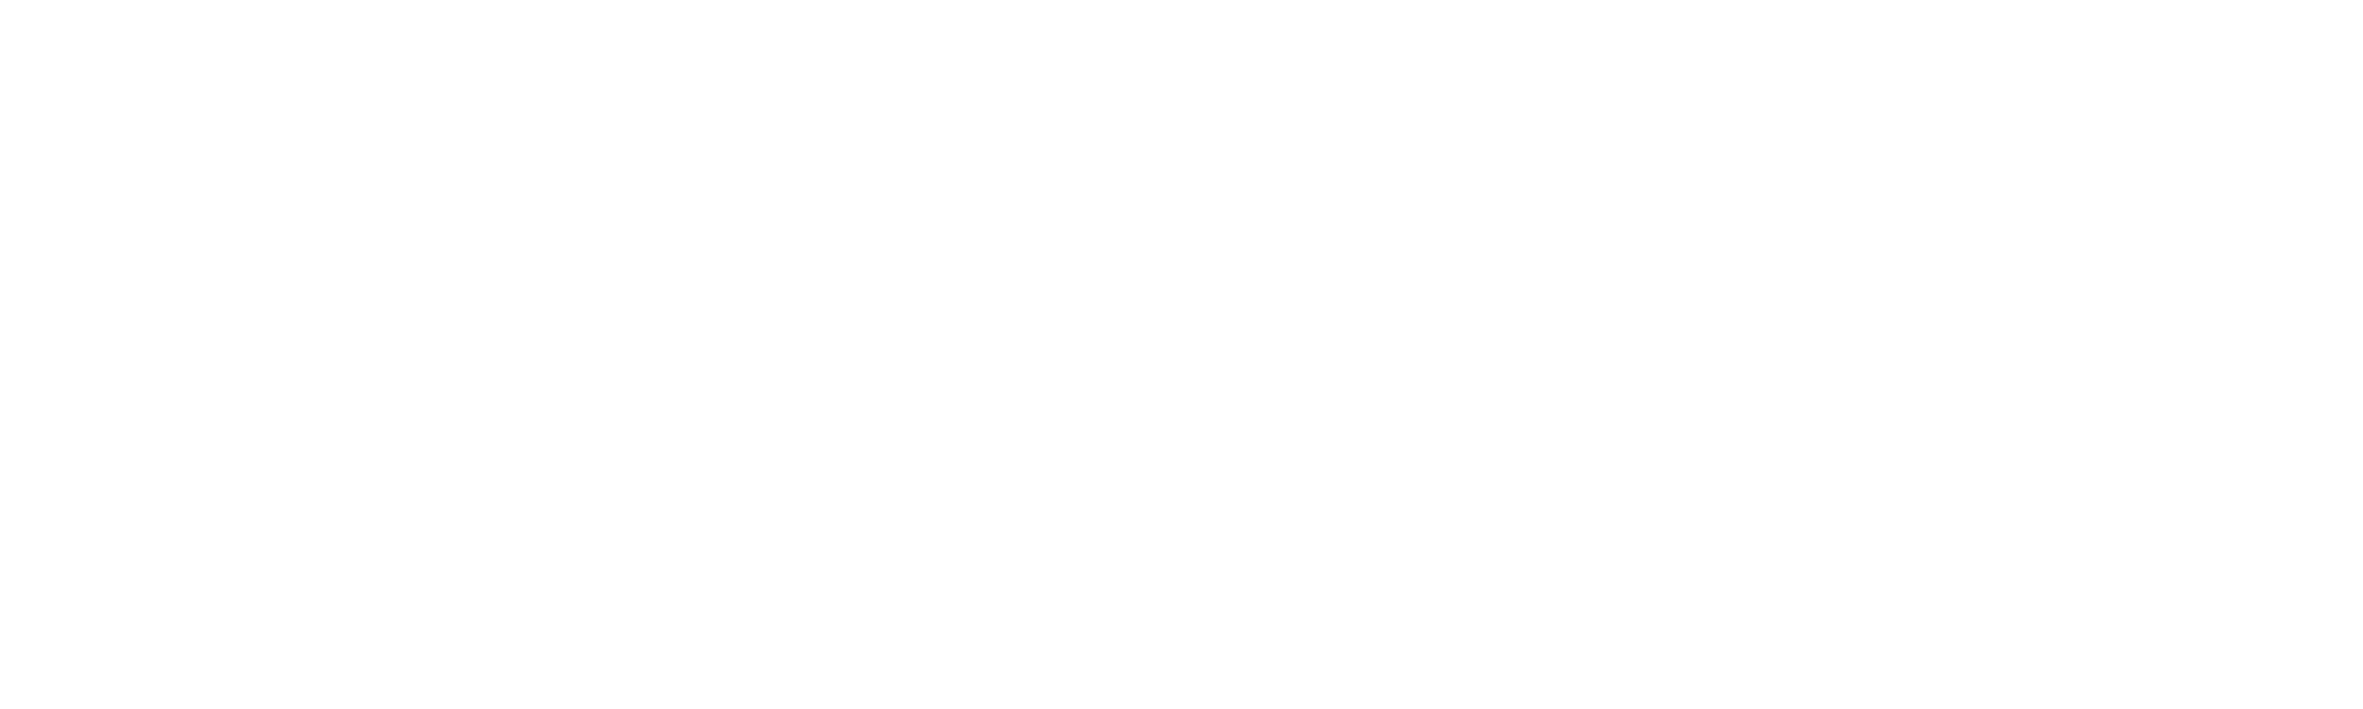 Llega Geecool, la primera marca española de móviles reacondicionados  dirigida al gran consumo